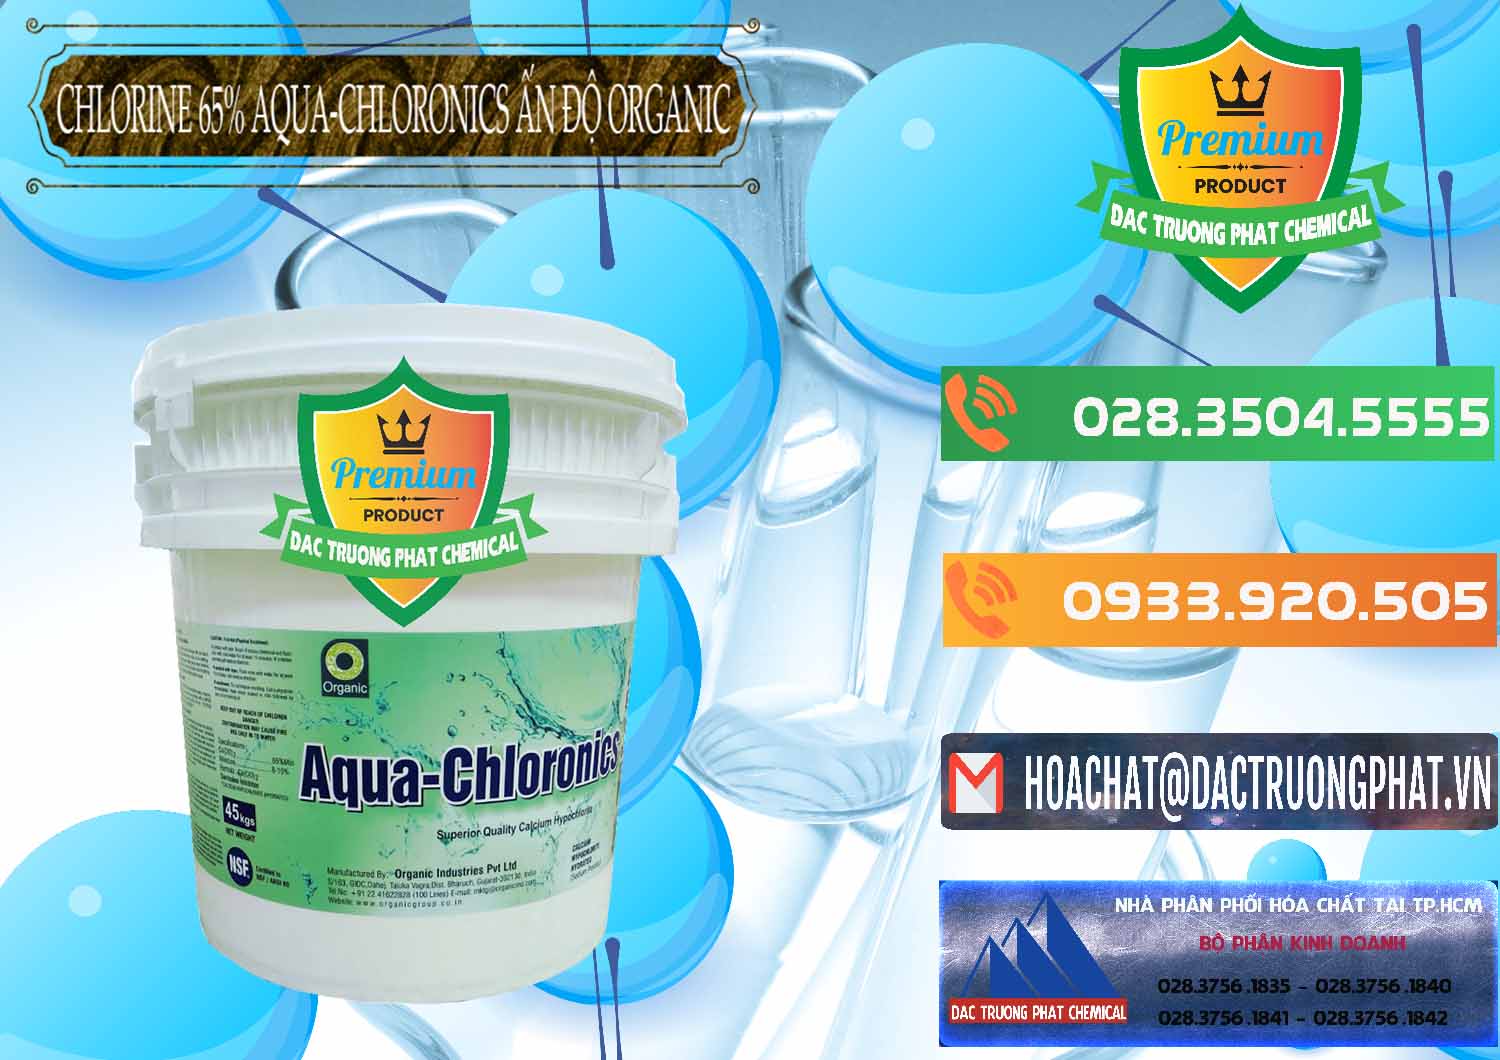 Cty kinh doanh - bán Chlorine – Clorin 65% Aqua-Chloronics Ấn Độ Organic India - 0210 - Nhà nhập khẩu & phân phối hóa chất tại TP.HCM - hoachatxulynuoc.com.vn